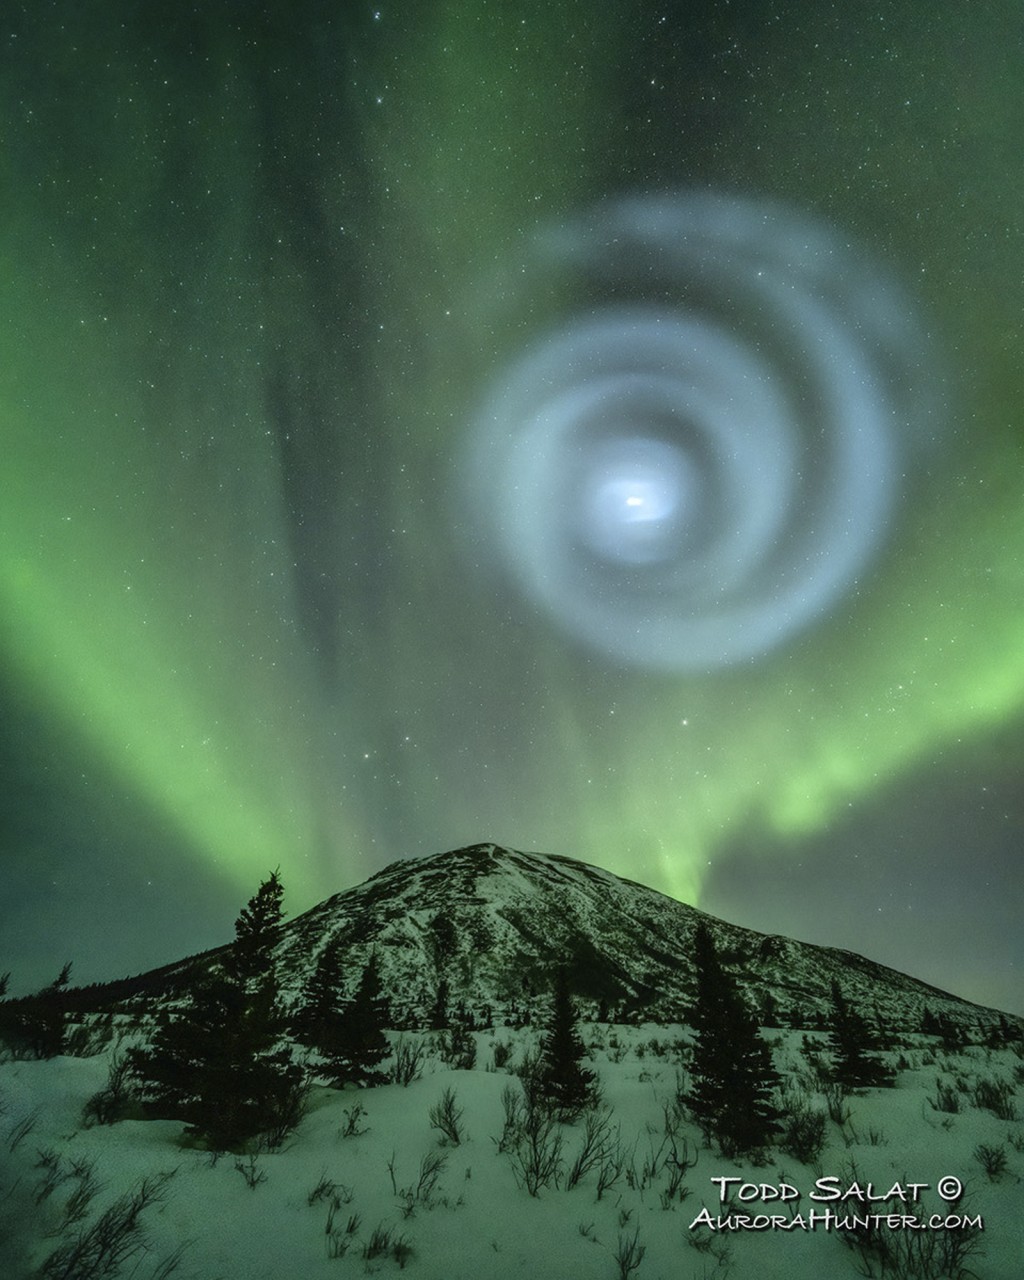 「极光猎人」萨拉特（Todd Salat）拍到极光中出现巨大蓝色螺旋的画面。 美联社